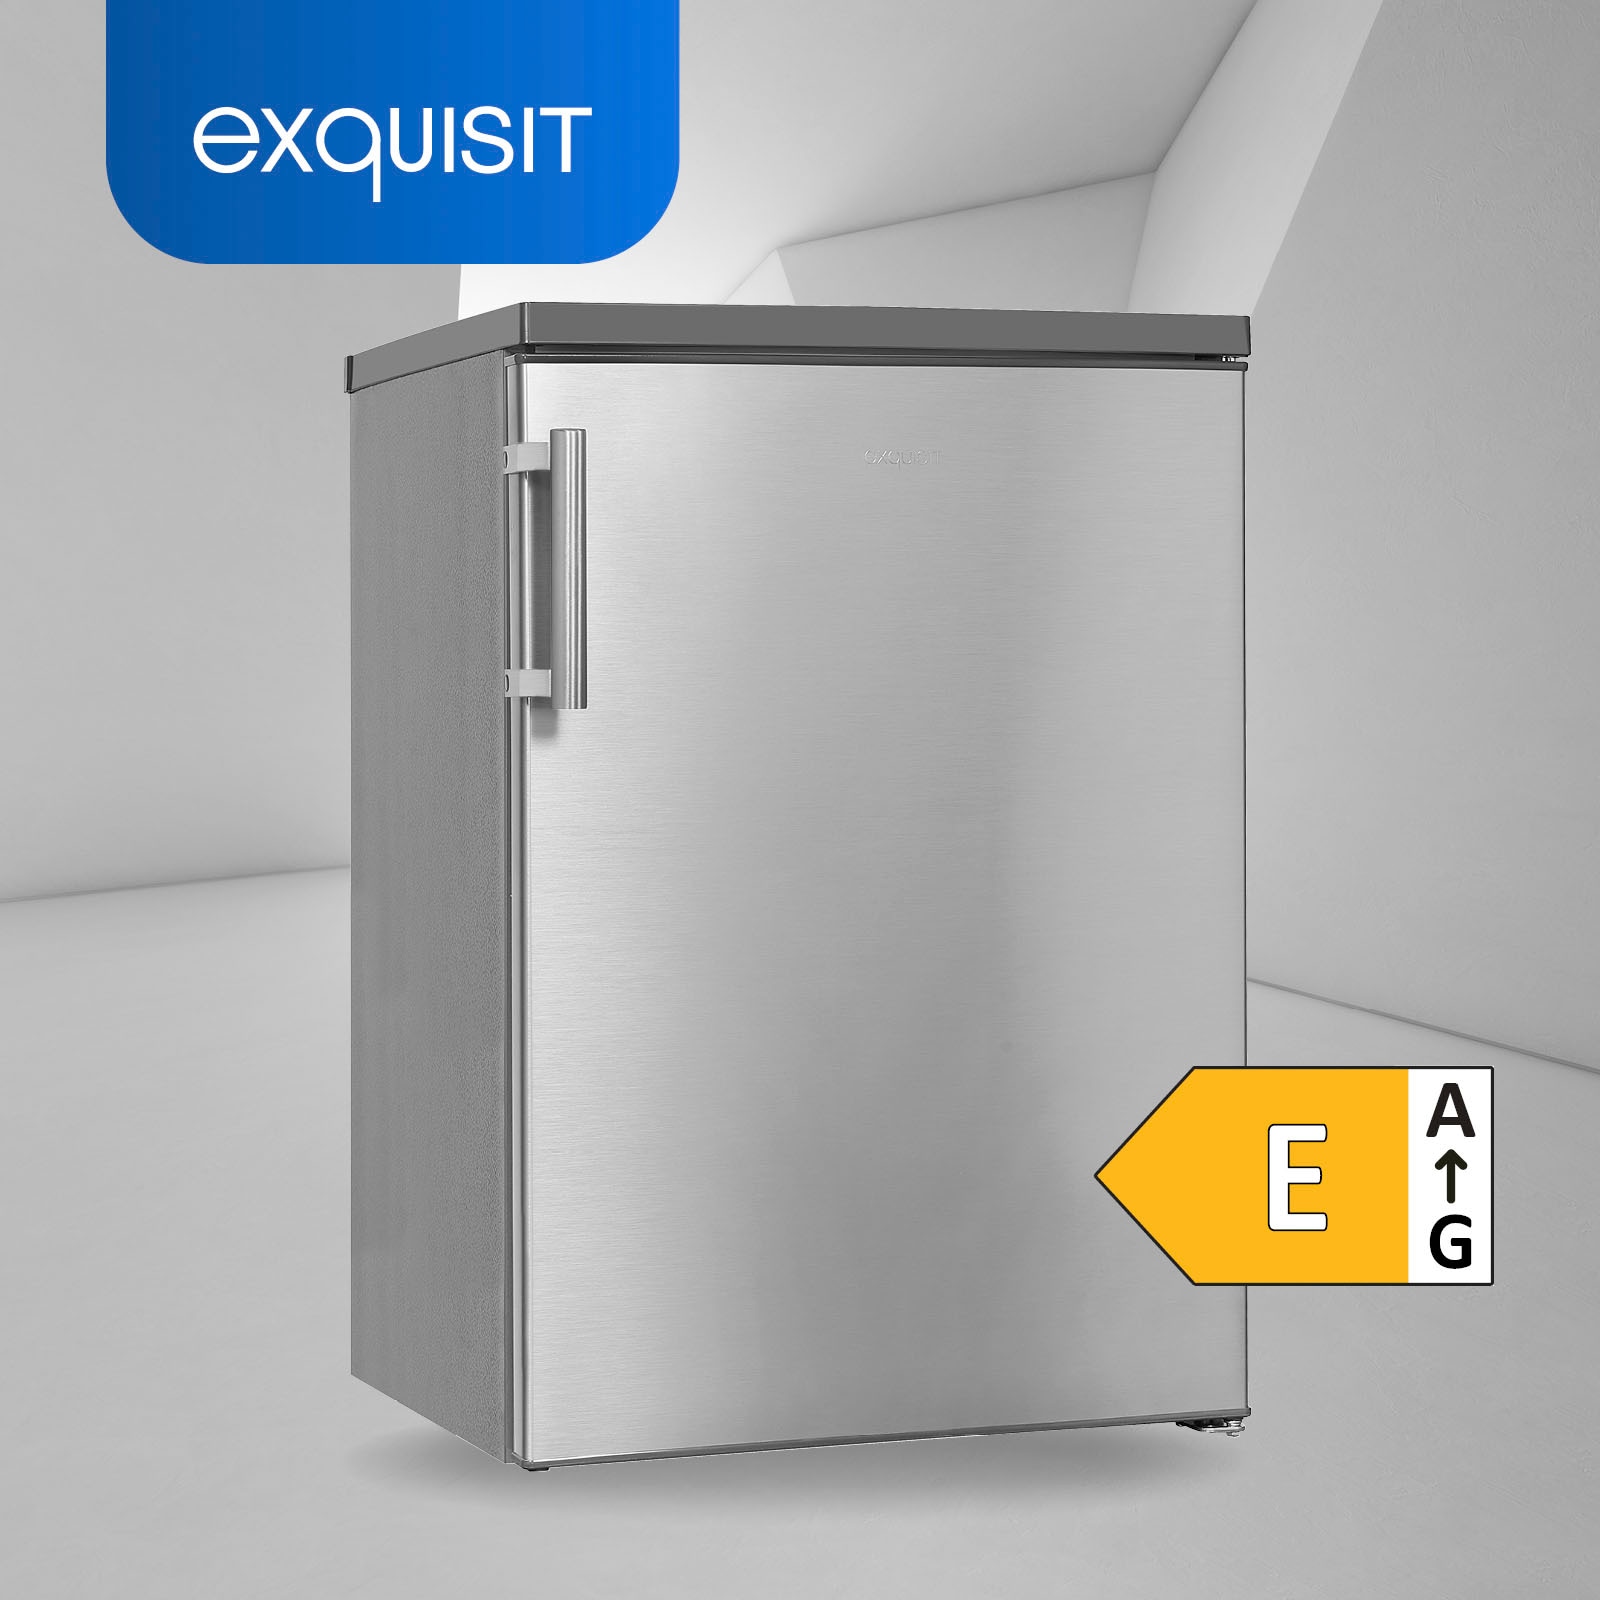 exquisit Vollraumkühlschrank »KS16-V-H-010E weiss«, KS16-V-H-010E inoxlook, 85  cm hoch, 56 cm breit kaufen | UNIVERSAL